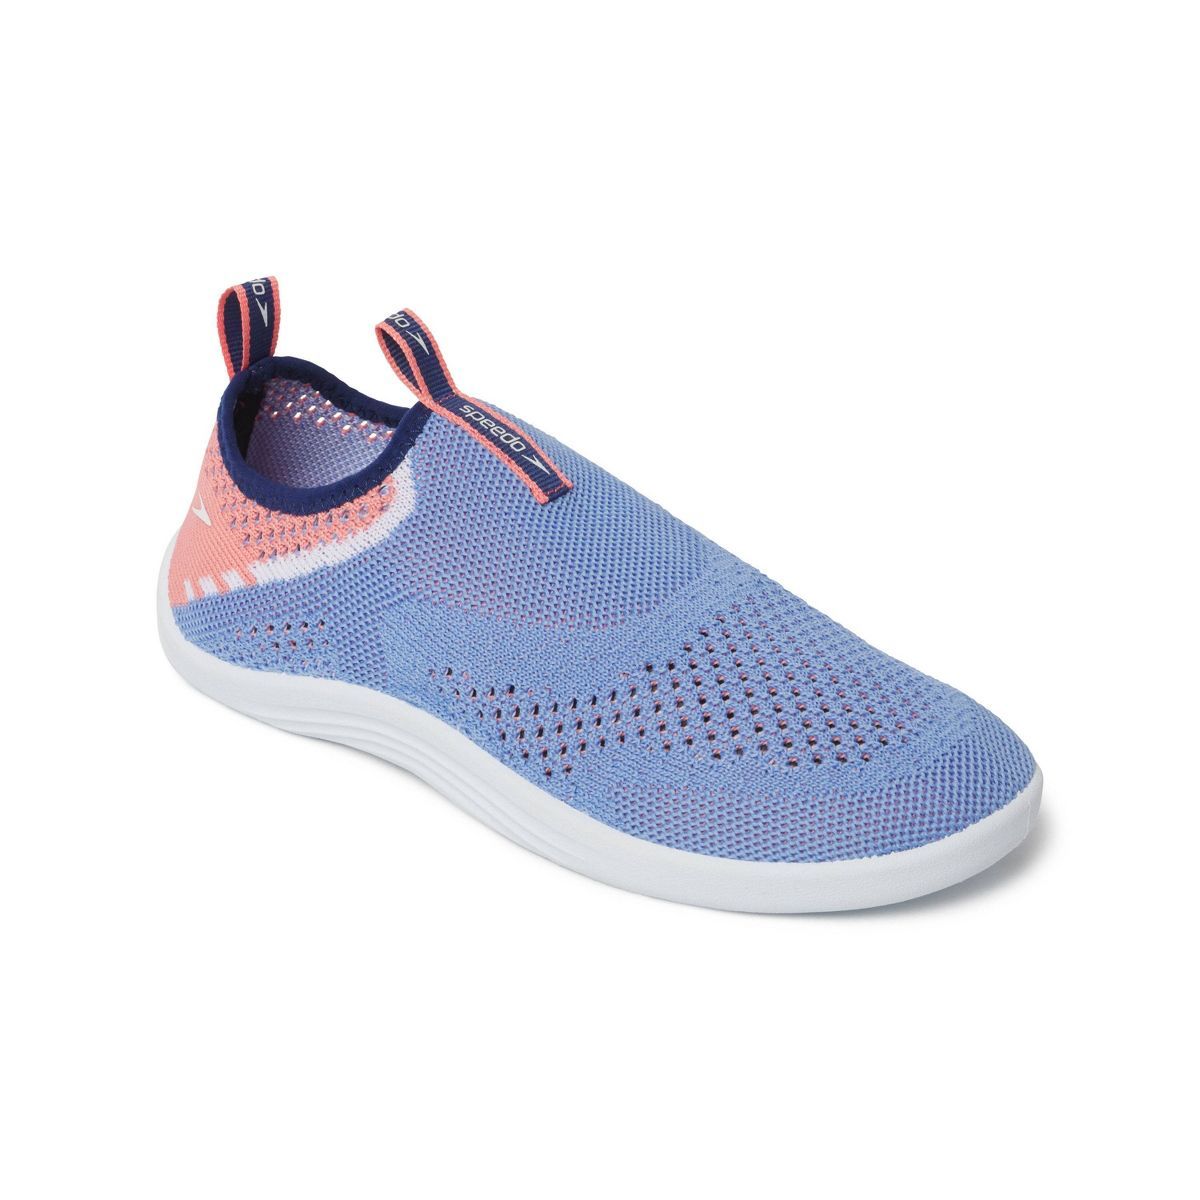 Speedo Women's Surf Strider Water Shoes | Target